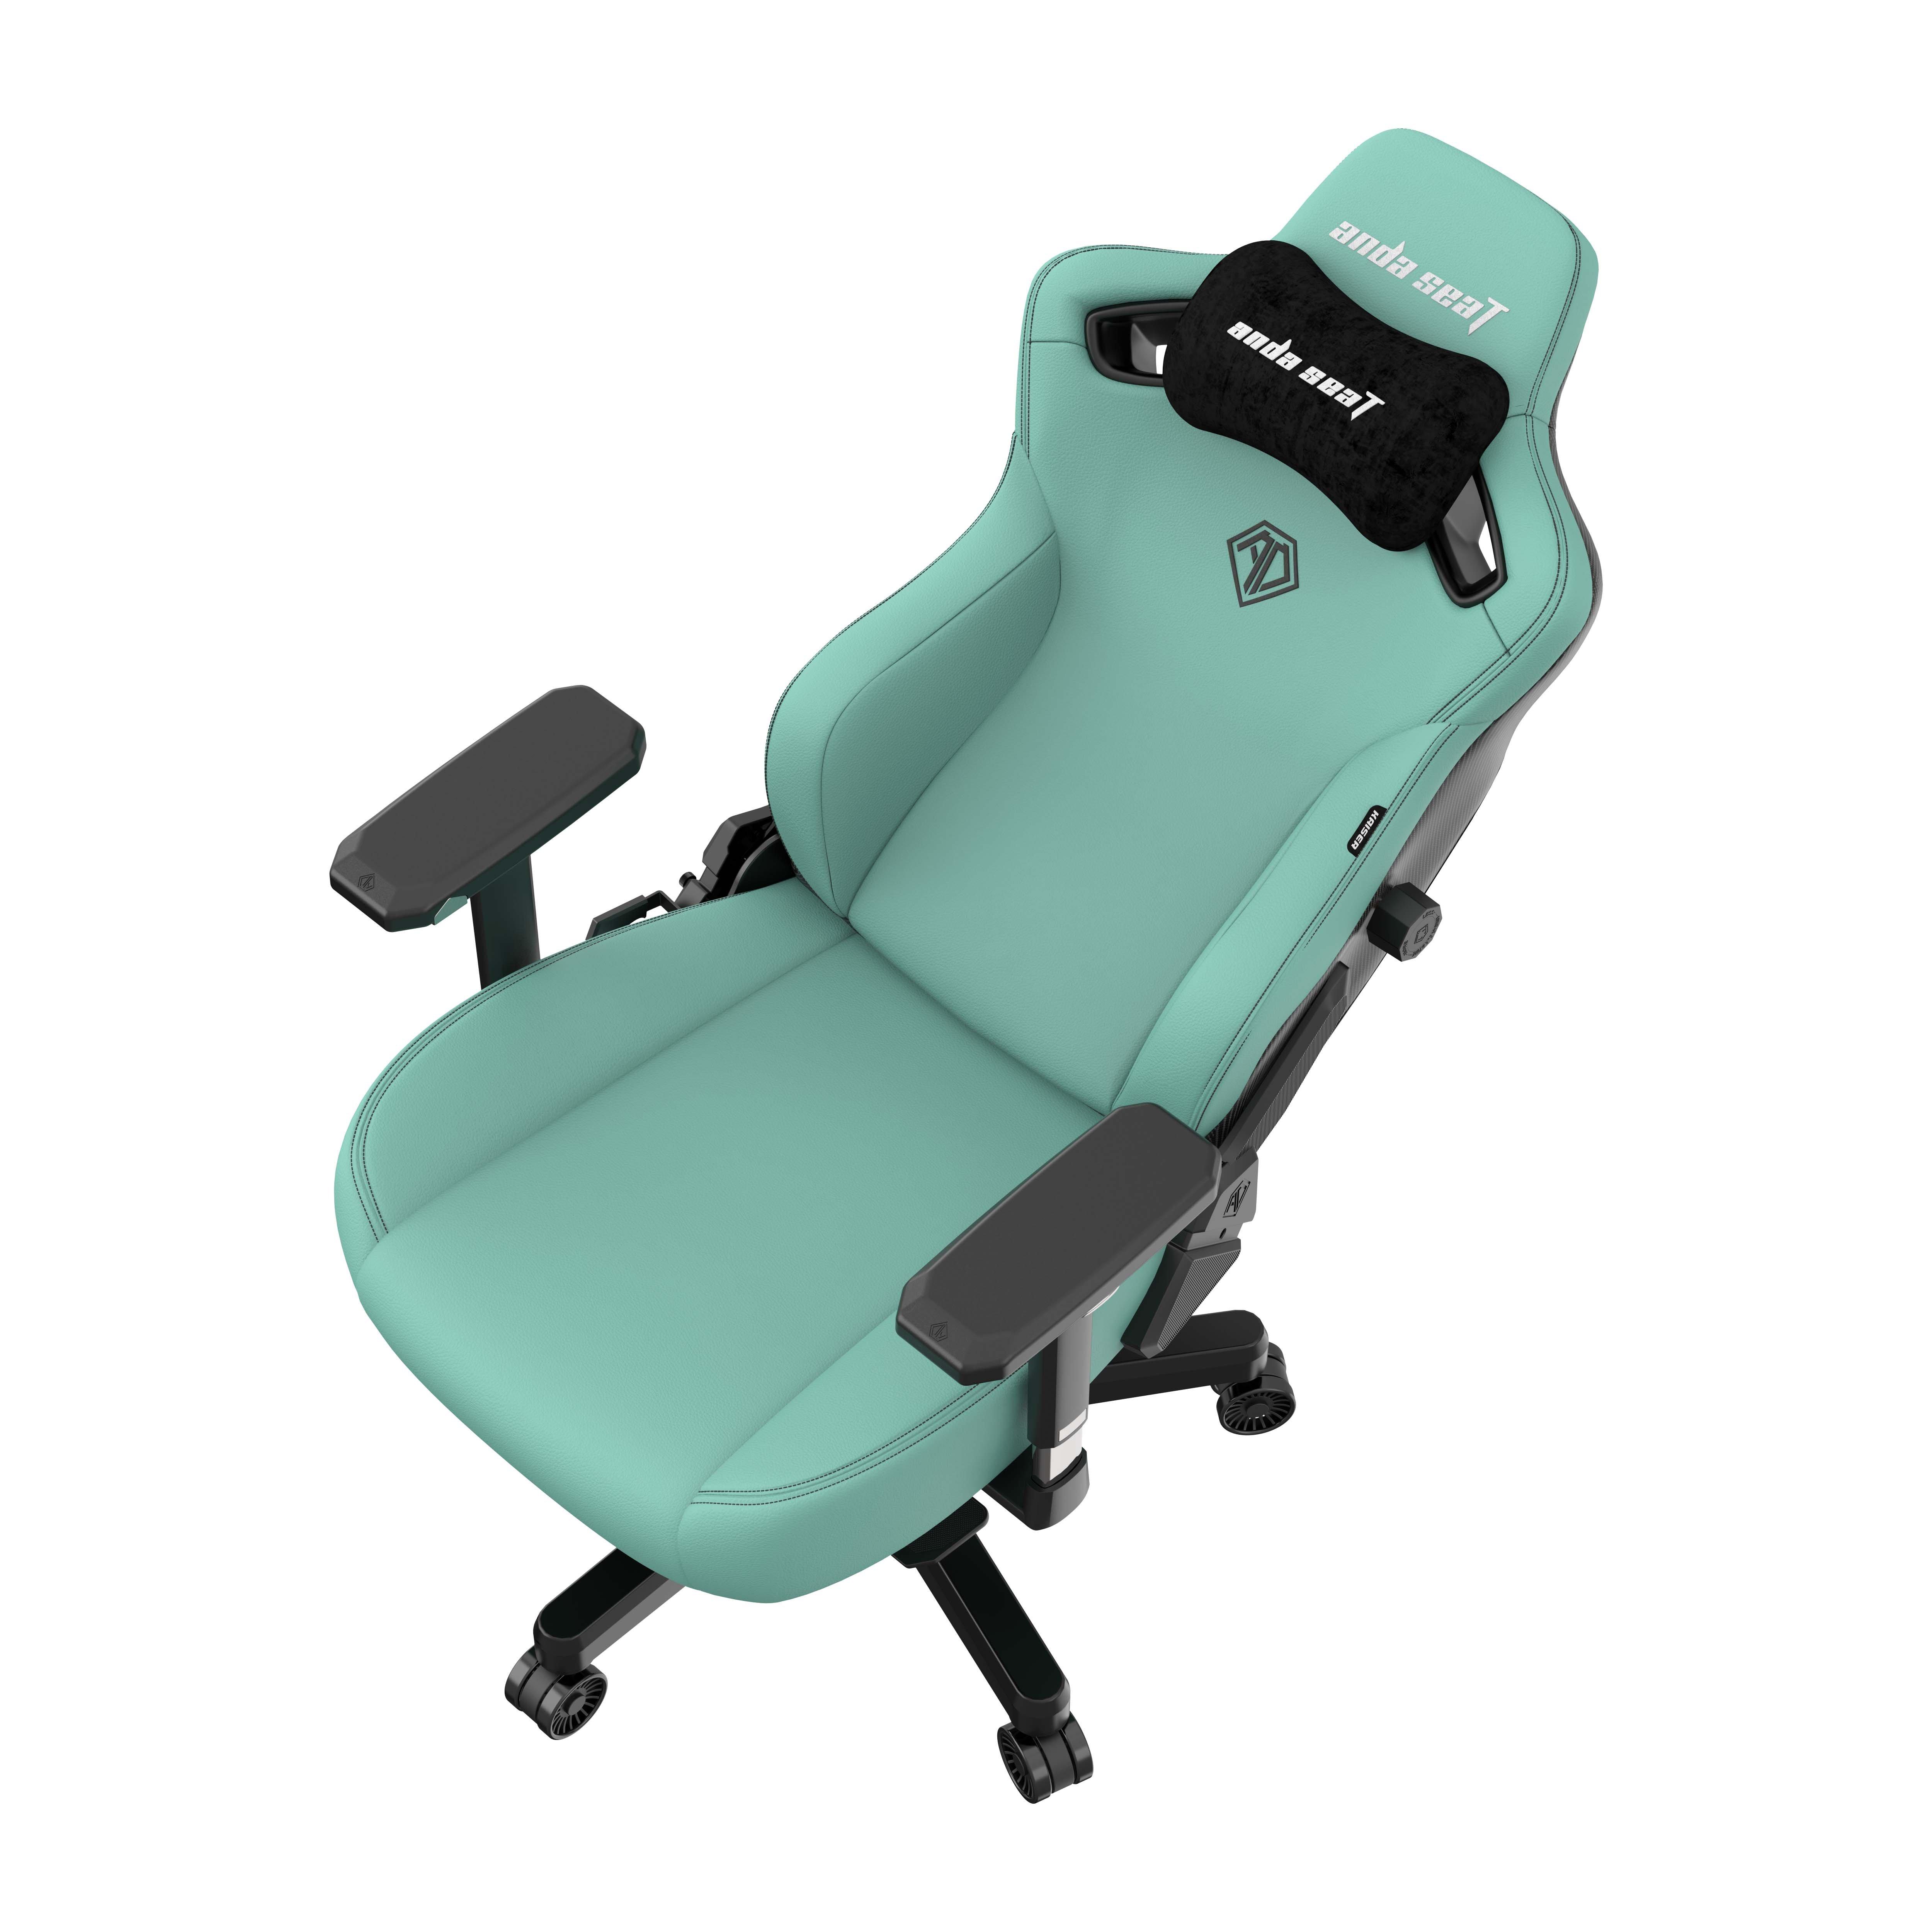 AndaSeat Kaiser 3 Gaming Chair